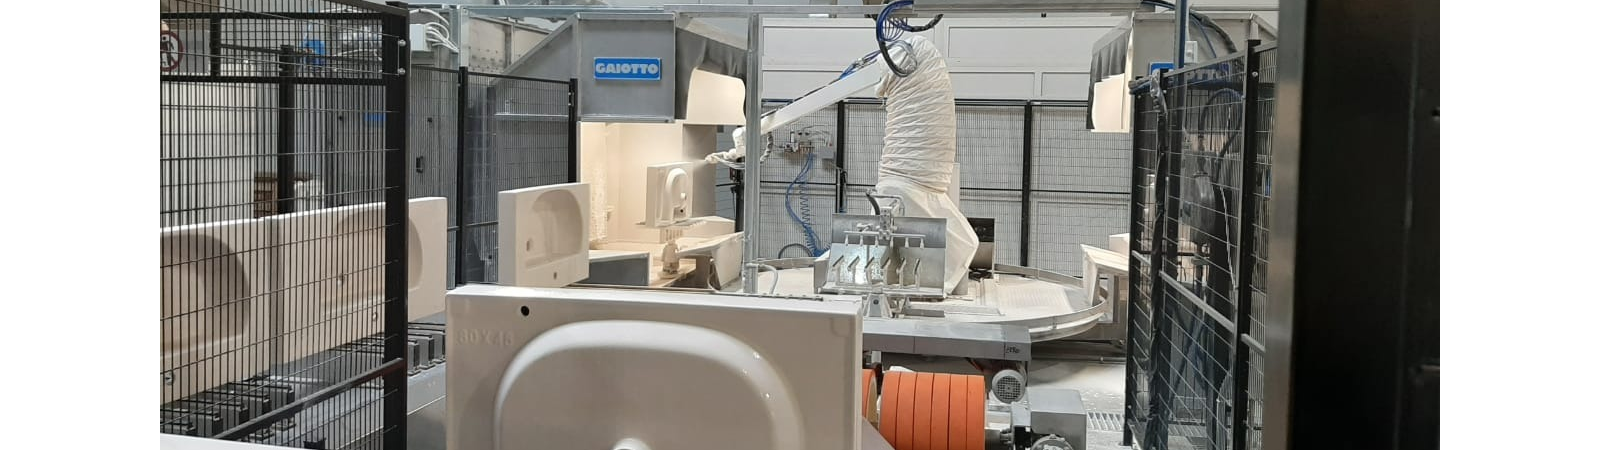 Kerama Marazzi и роботизированное глазурование Gaiotto для производства сантехнической керамики